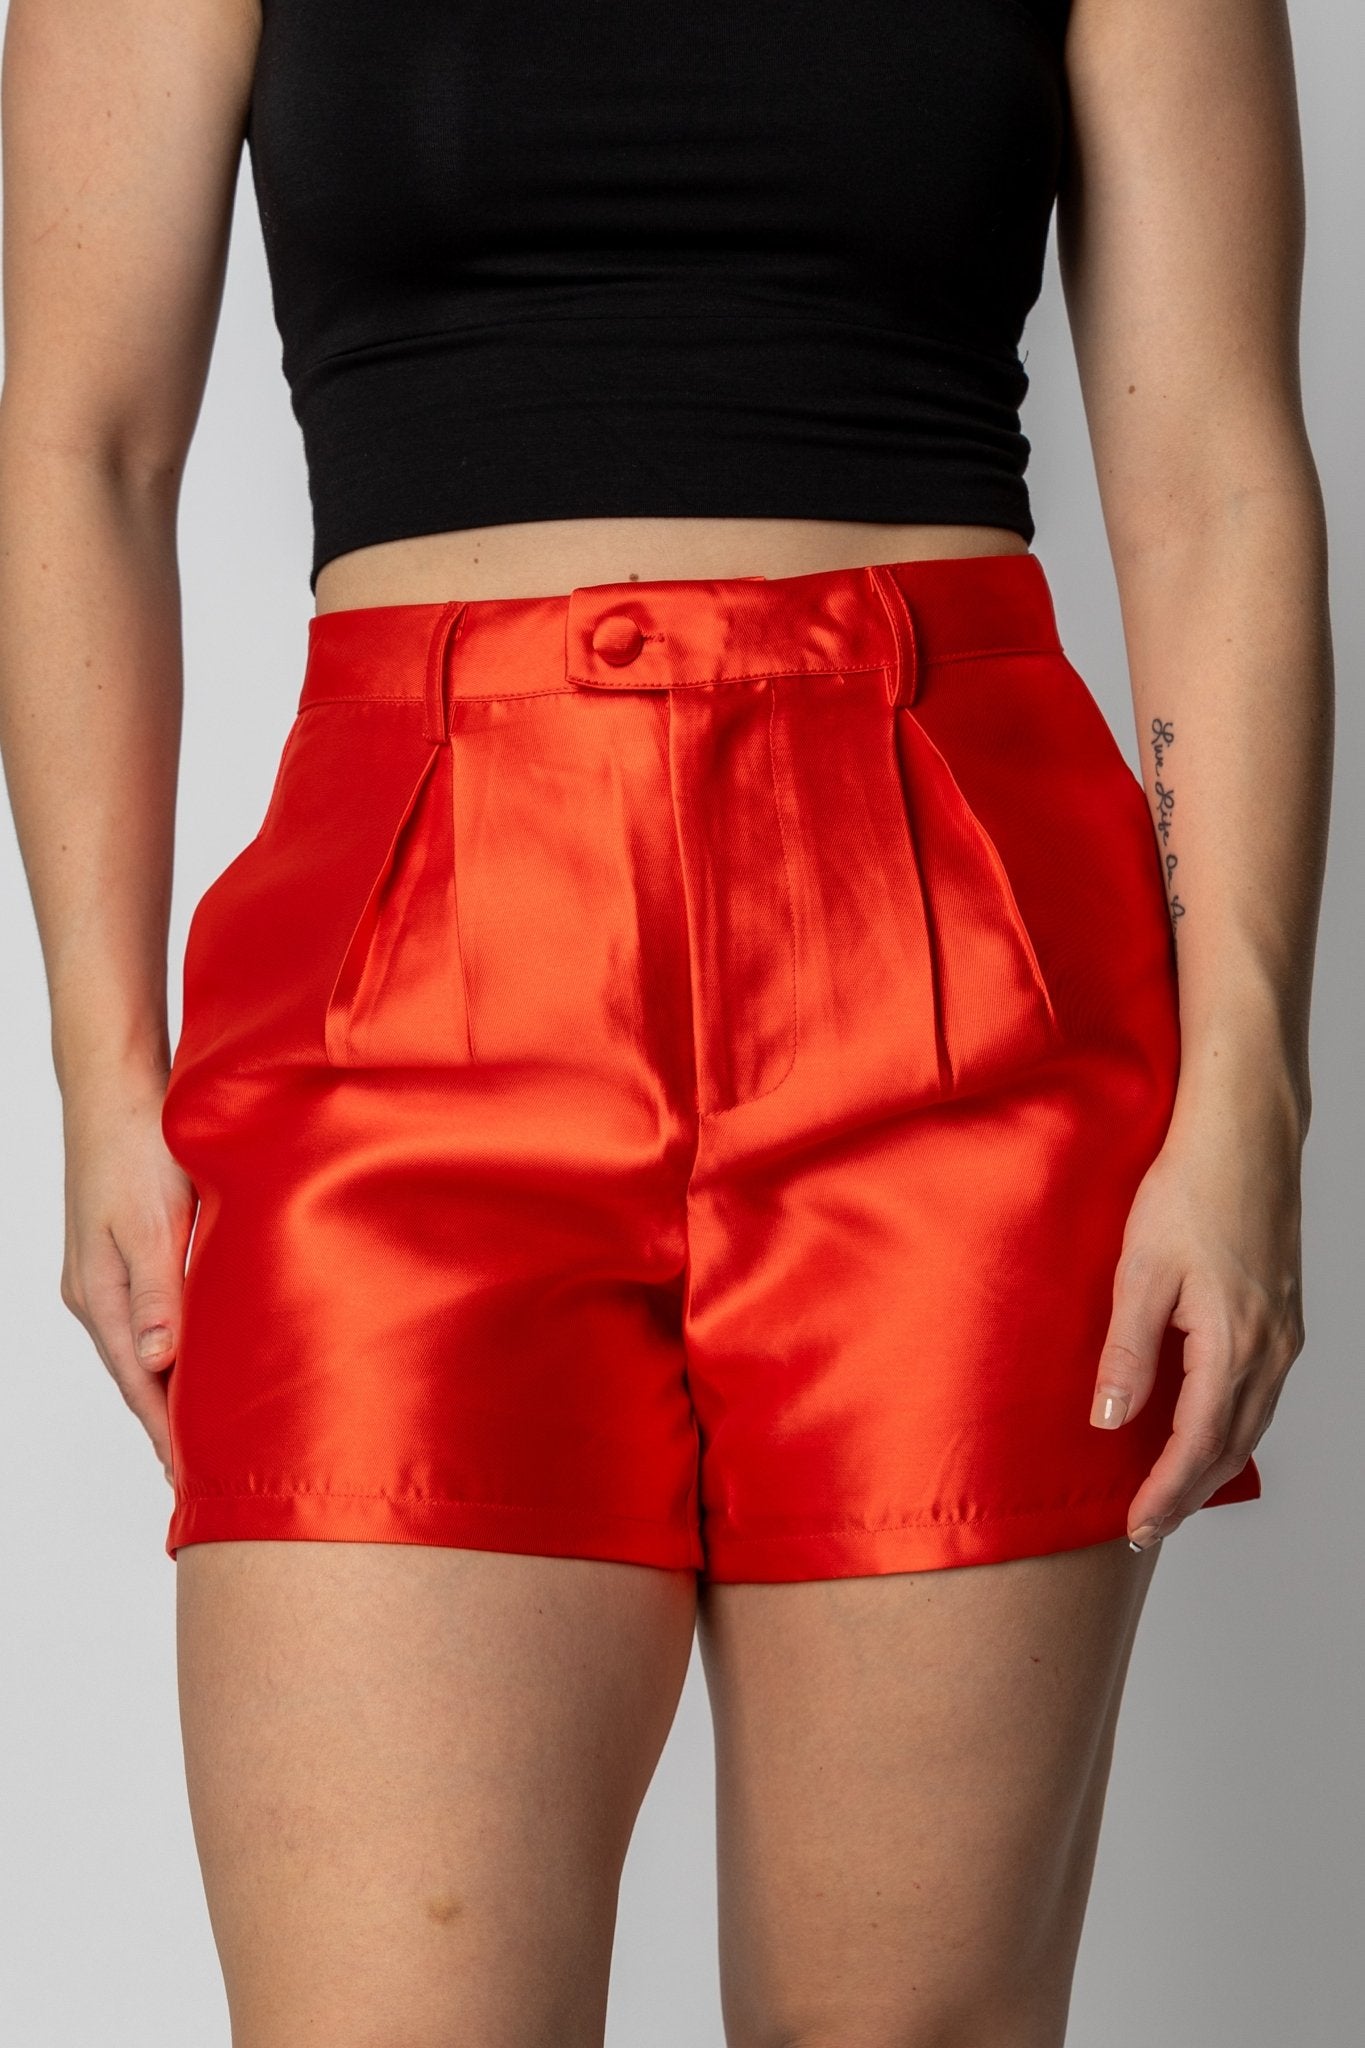 Satin twill shorts orange - Trendy Shorts - Fashion Shorts at Lush Fashion Lounge Boutique in Oklahoma City